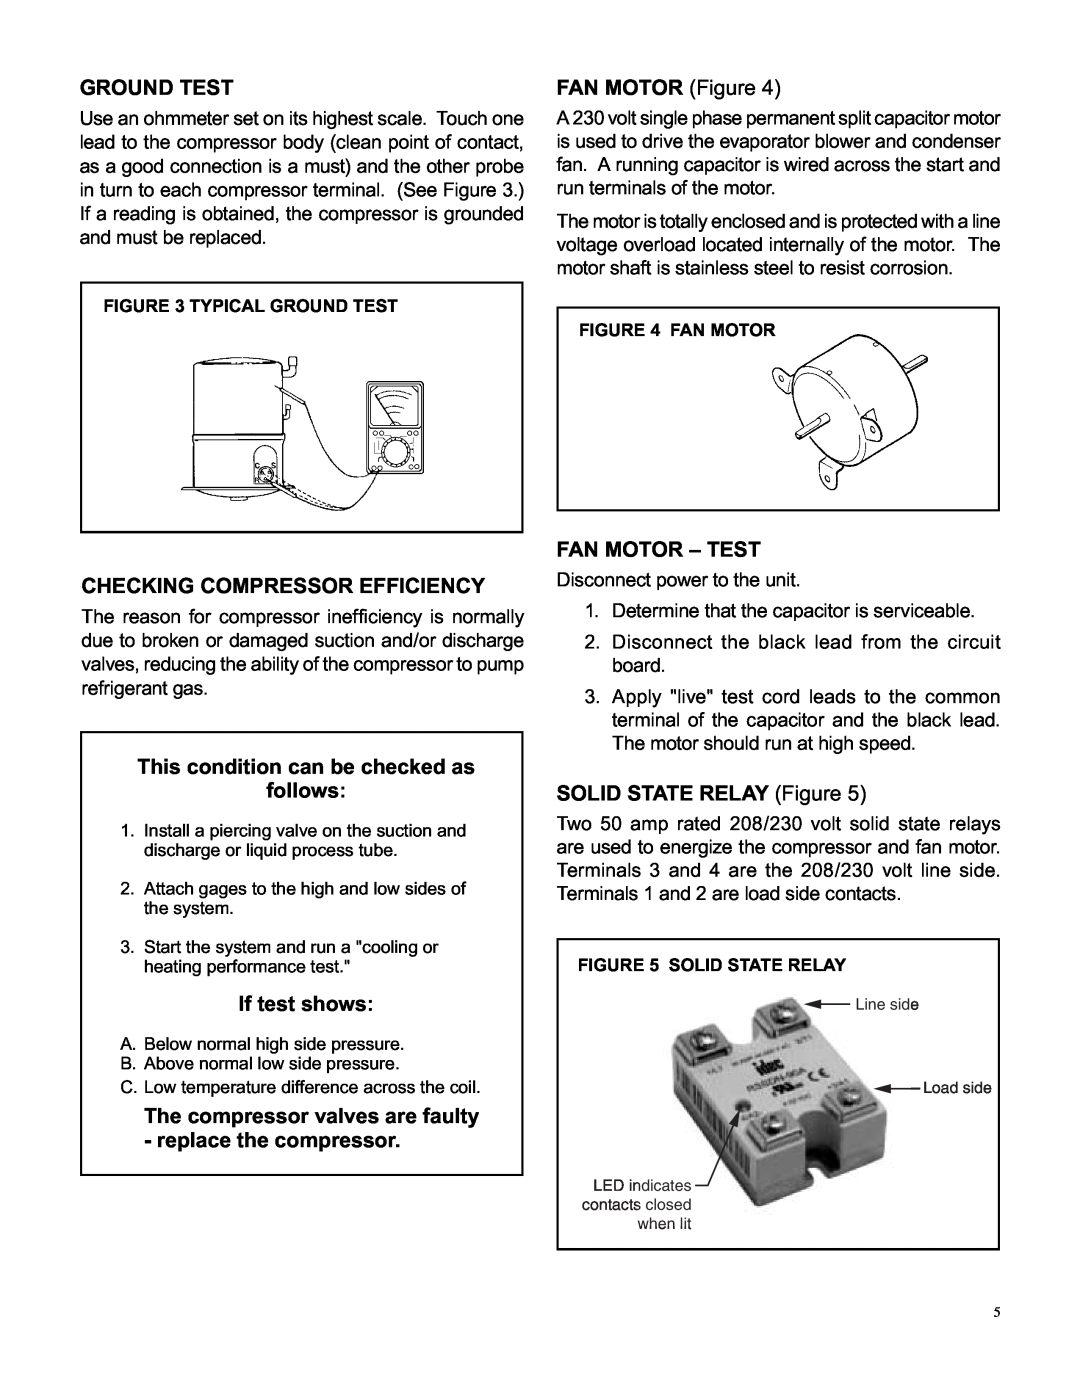 Friedrich SH15L30-A manual Ground Test, FAN MOTOR Figure, Checking Compressor Efficiency, If test shows, Fan Motor – Test 